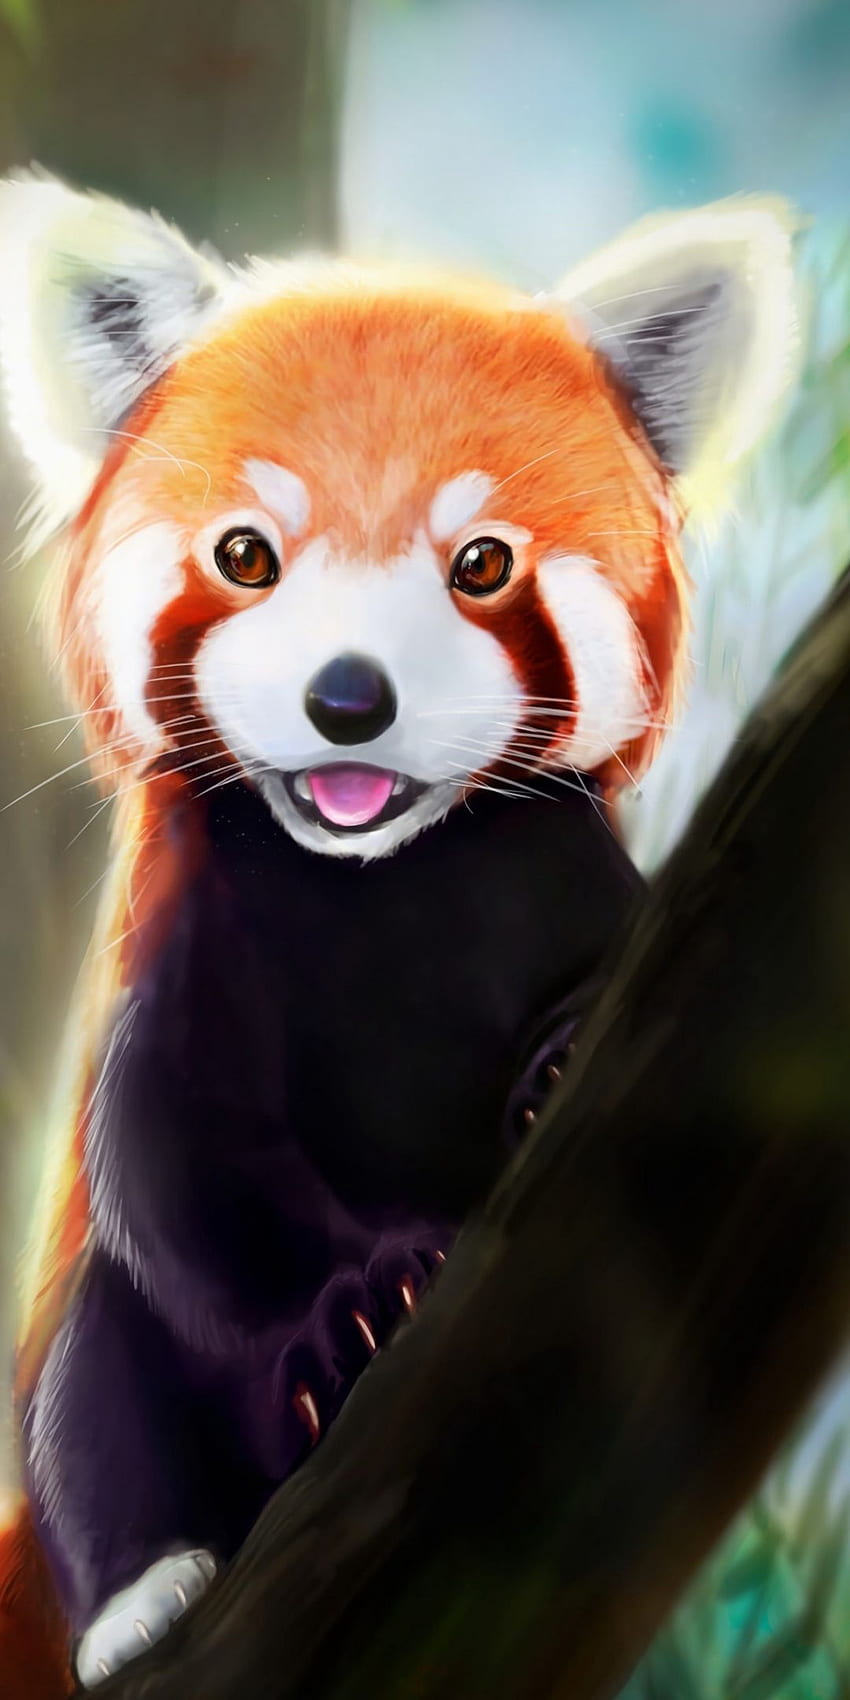 Không thể rời mắt khỏi vẻ độc đáo và dễ thương của chú Gấu đỏ Panda Kawaii trong bức ảnh này. Càng xem càng yêu, hãy thưởng thức ngay nhé!